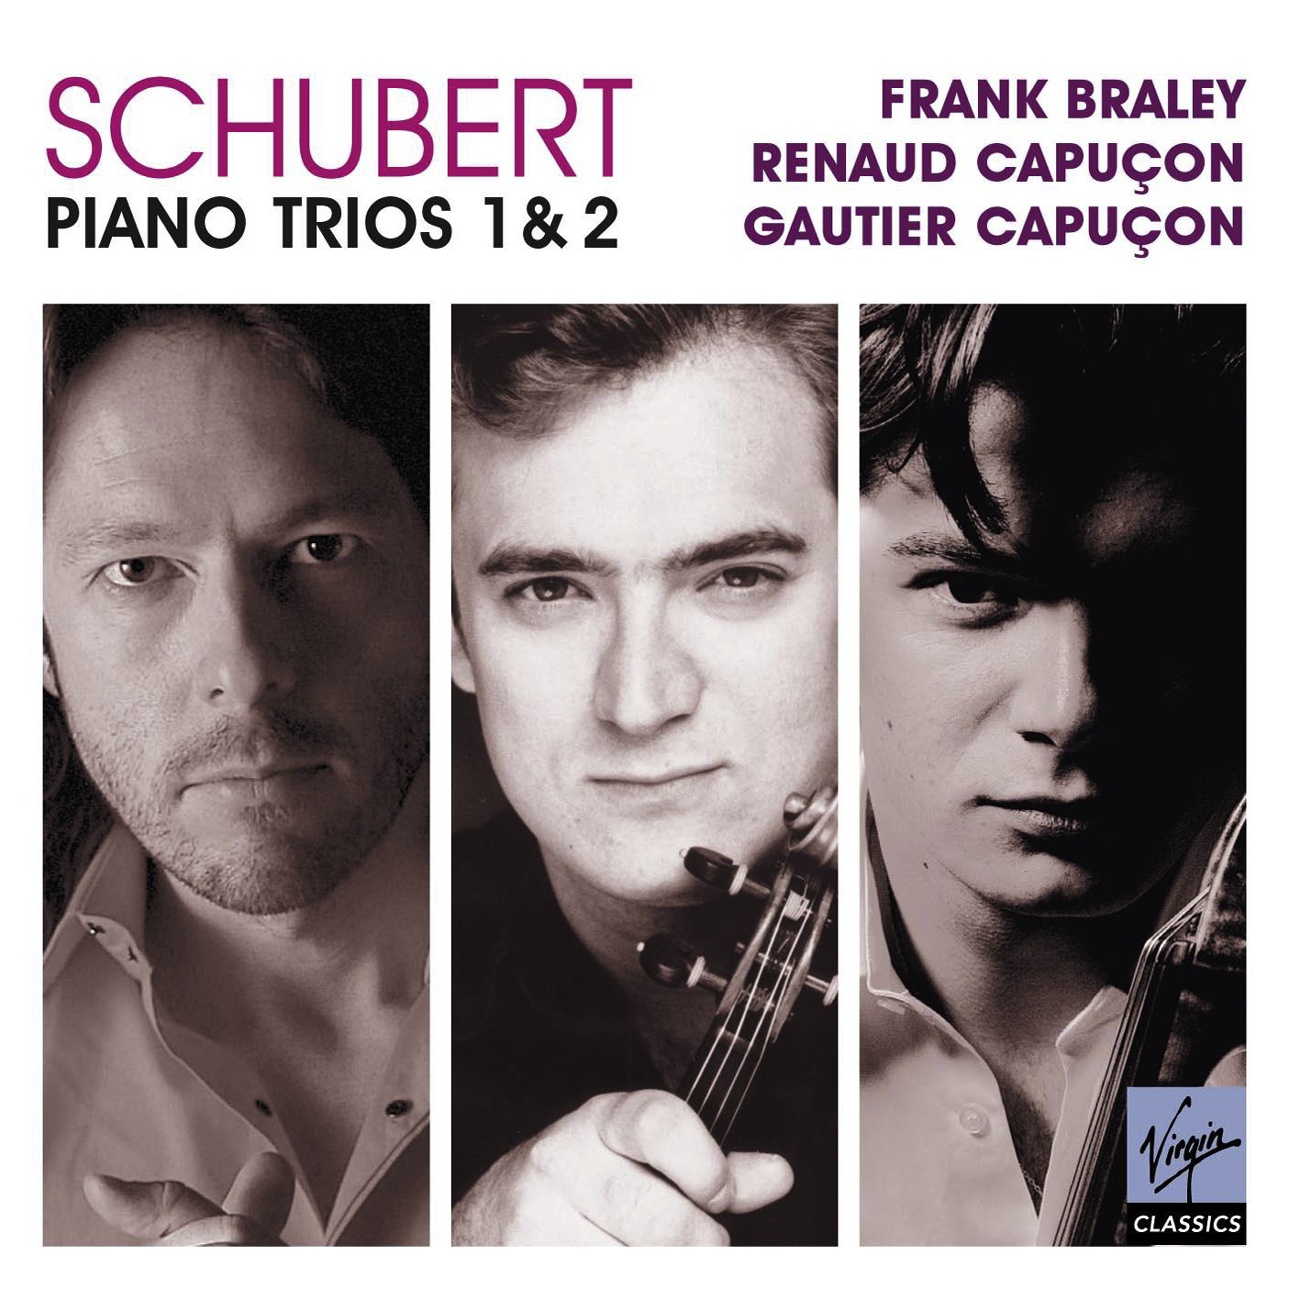 Piano Trio No. 2 in E flat major D.929: I.       Allegro